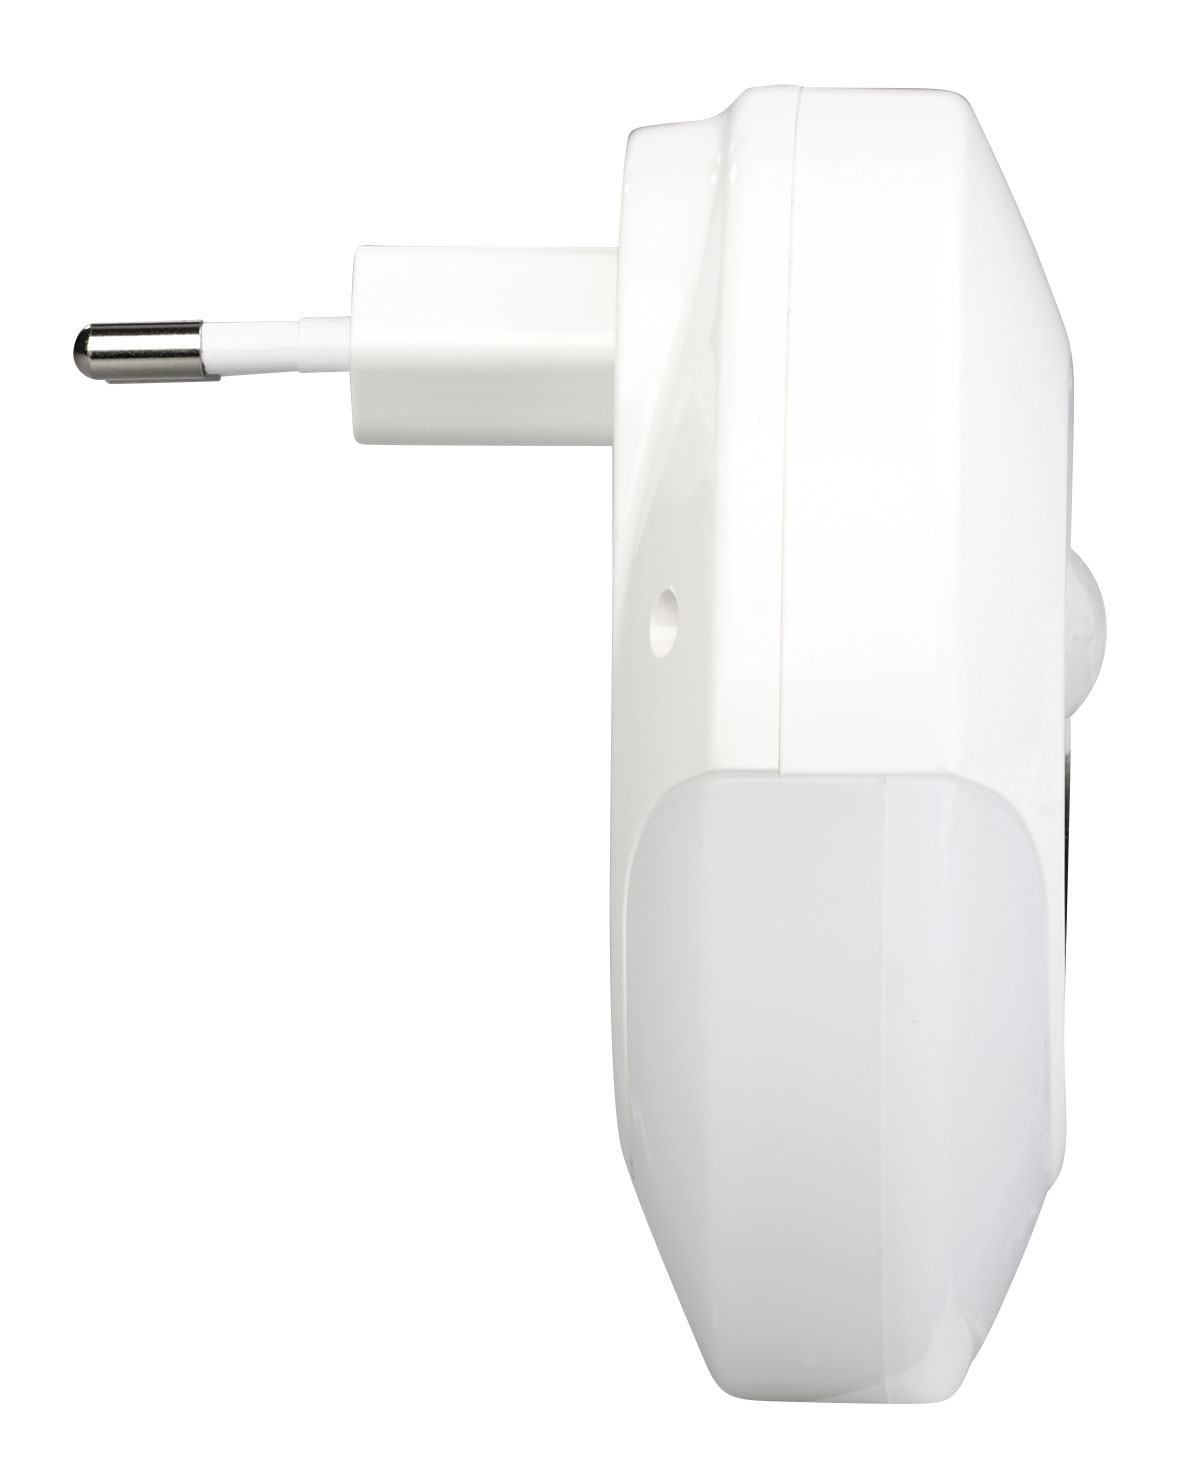 Veilleuses Luminea : Veilleuse à LED automatique sur prise de courant avec  2 ports de chargement USB (10 W)